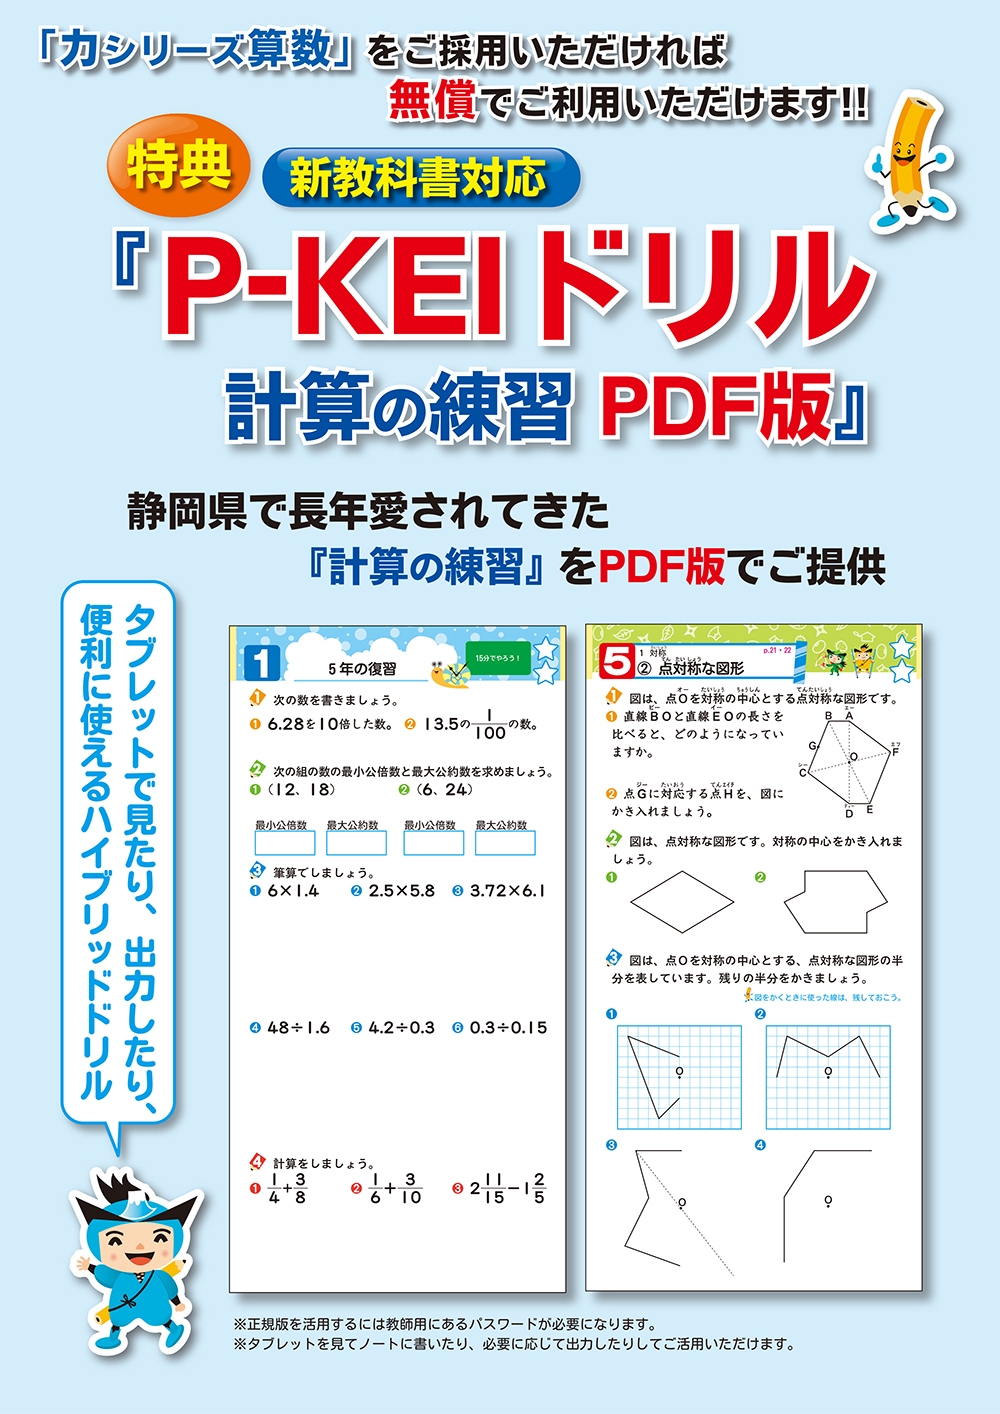 「P-KEI」ドリル紹介